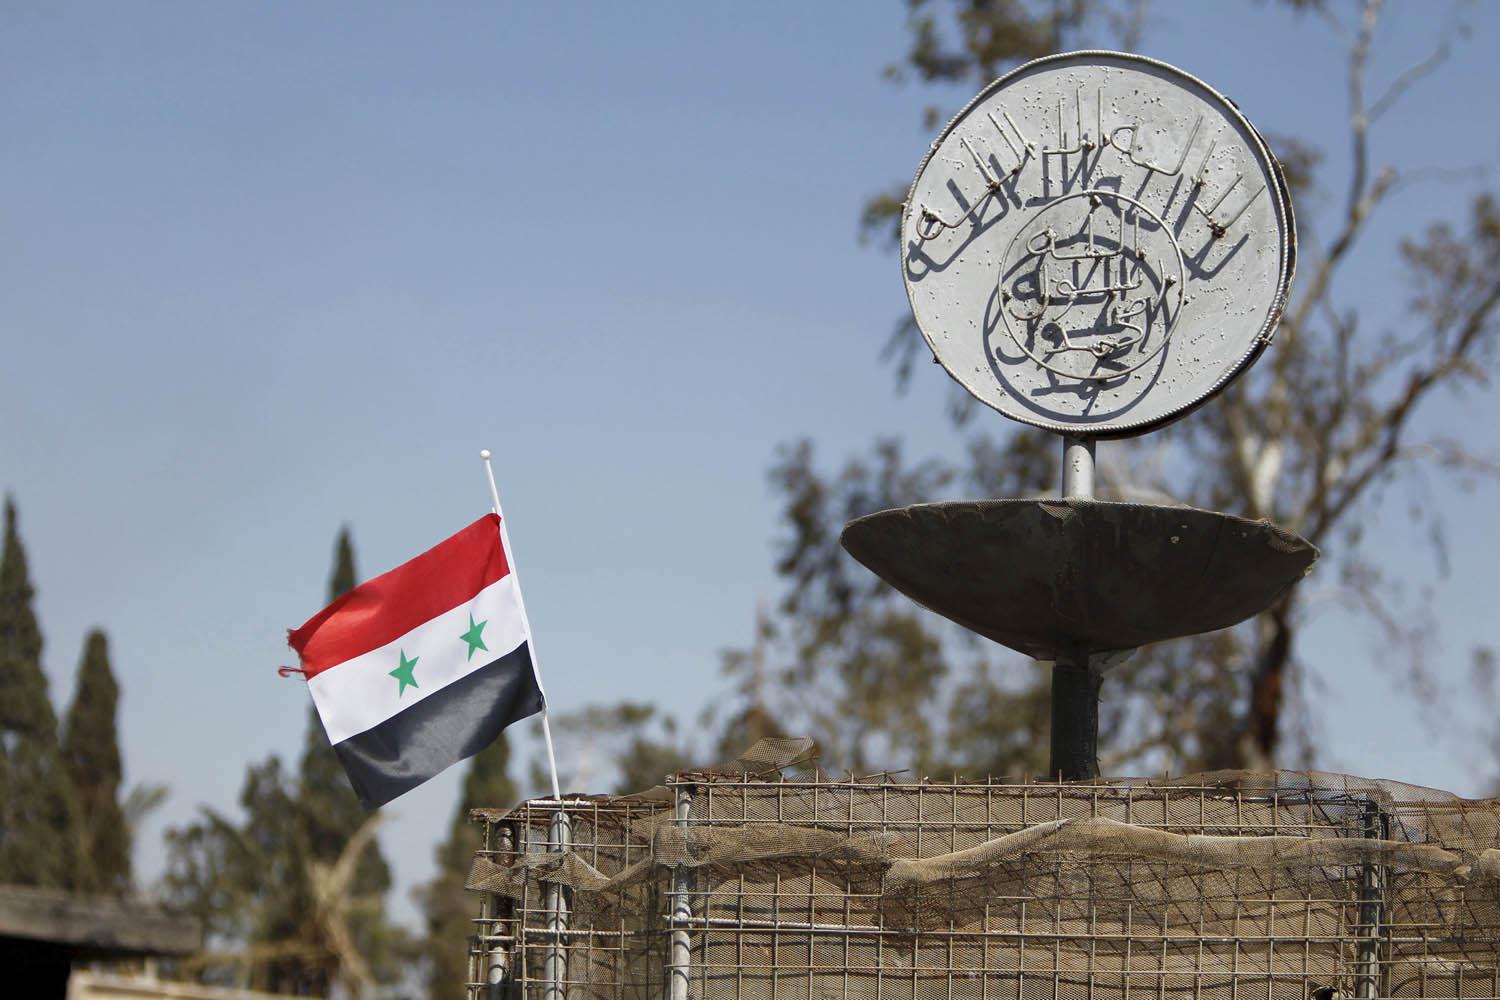 الجيش السوري يرفع علم بلاده بجانب شعار داعش